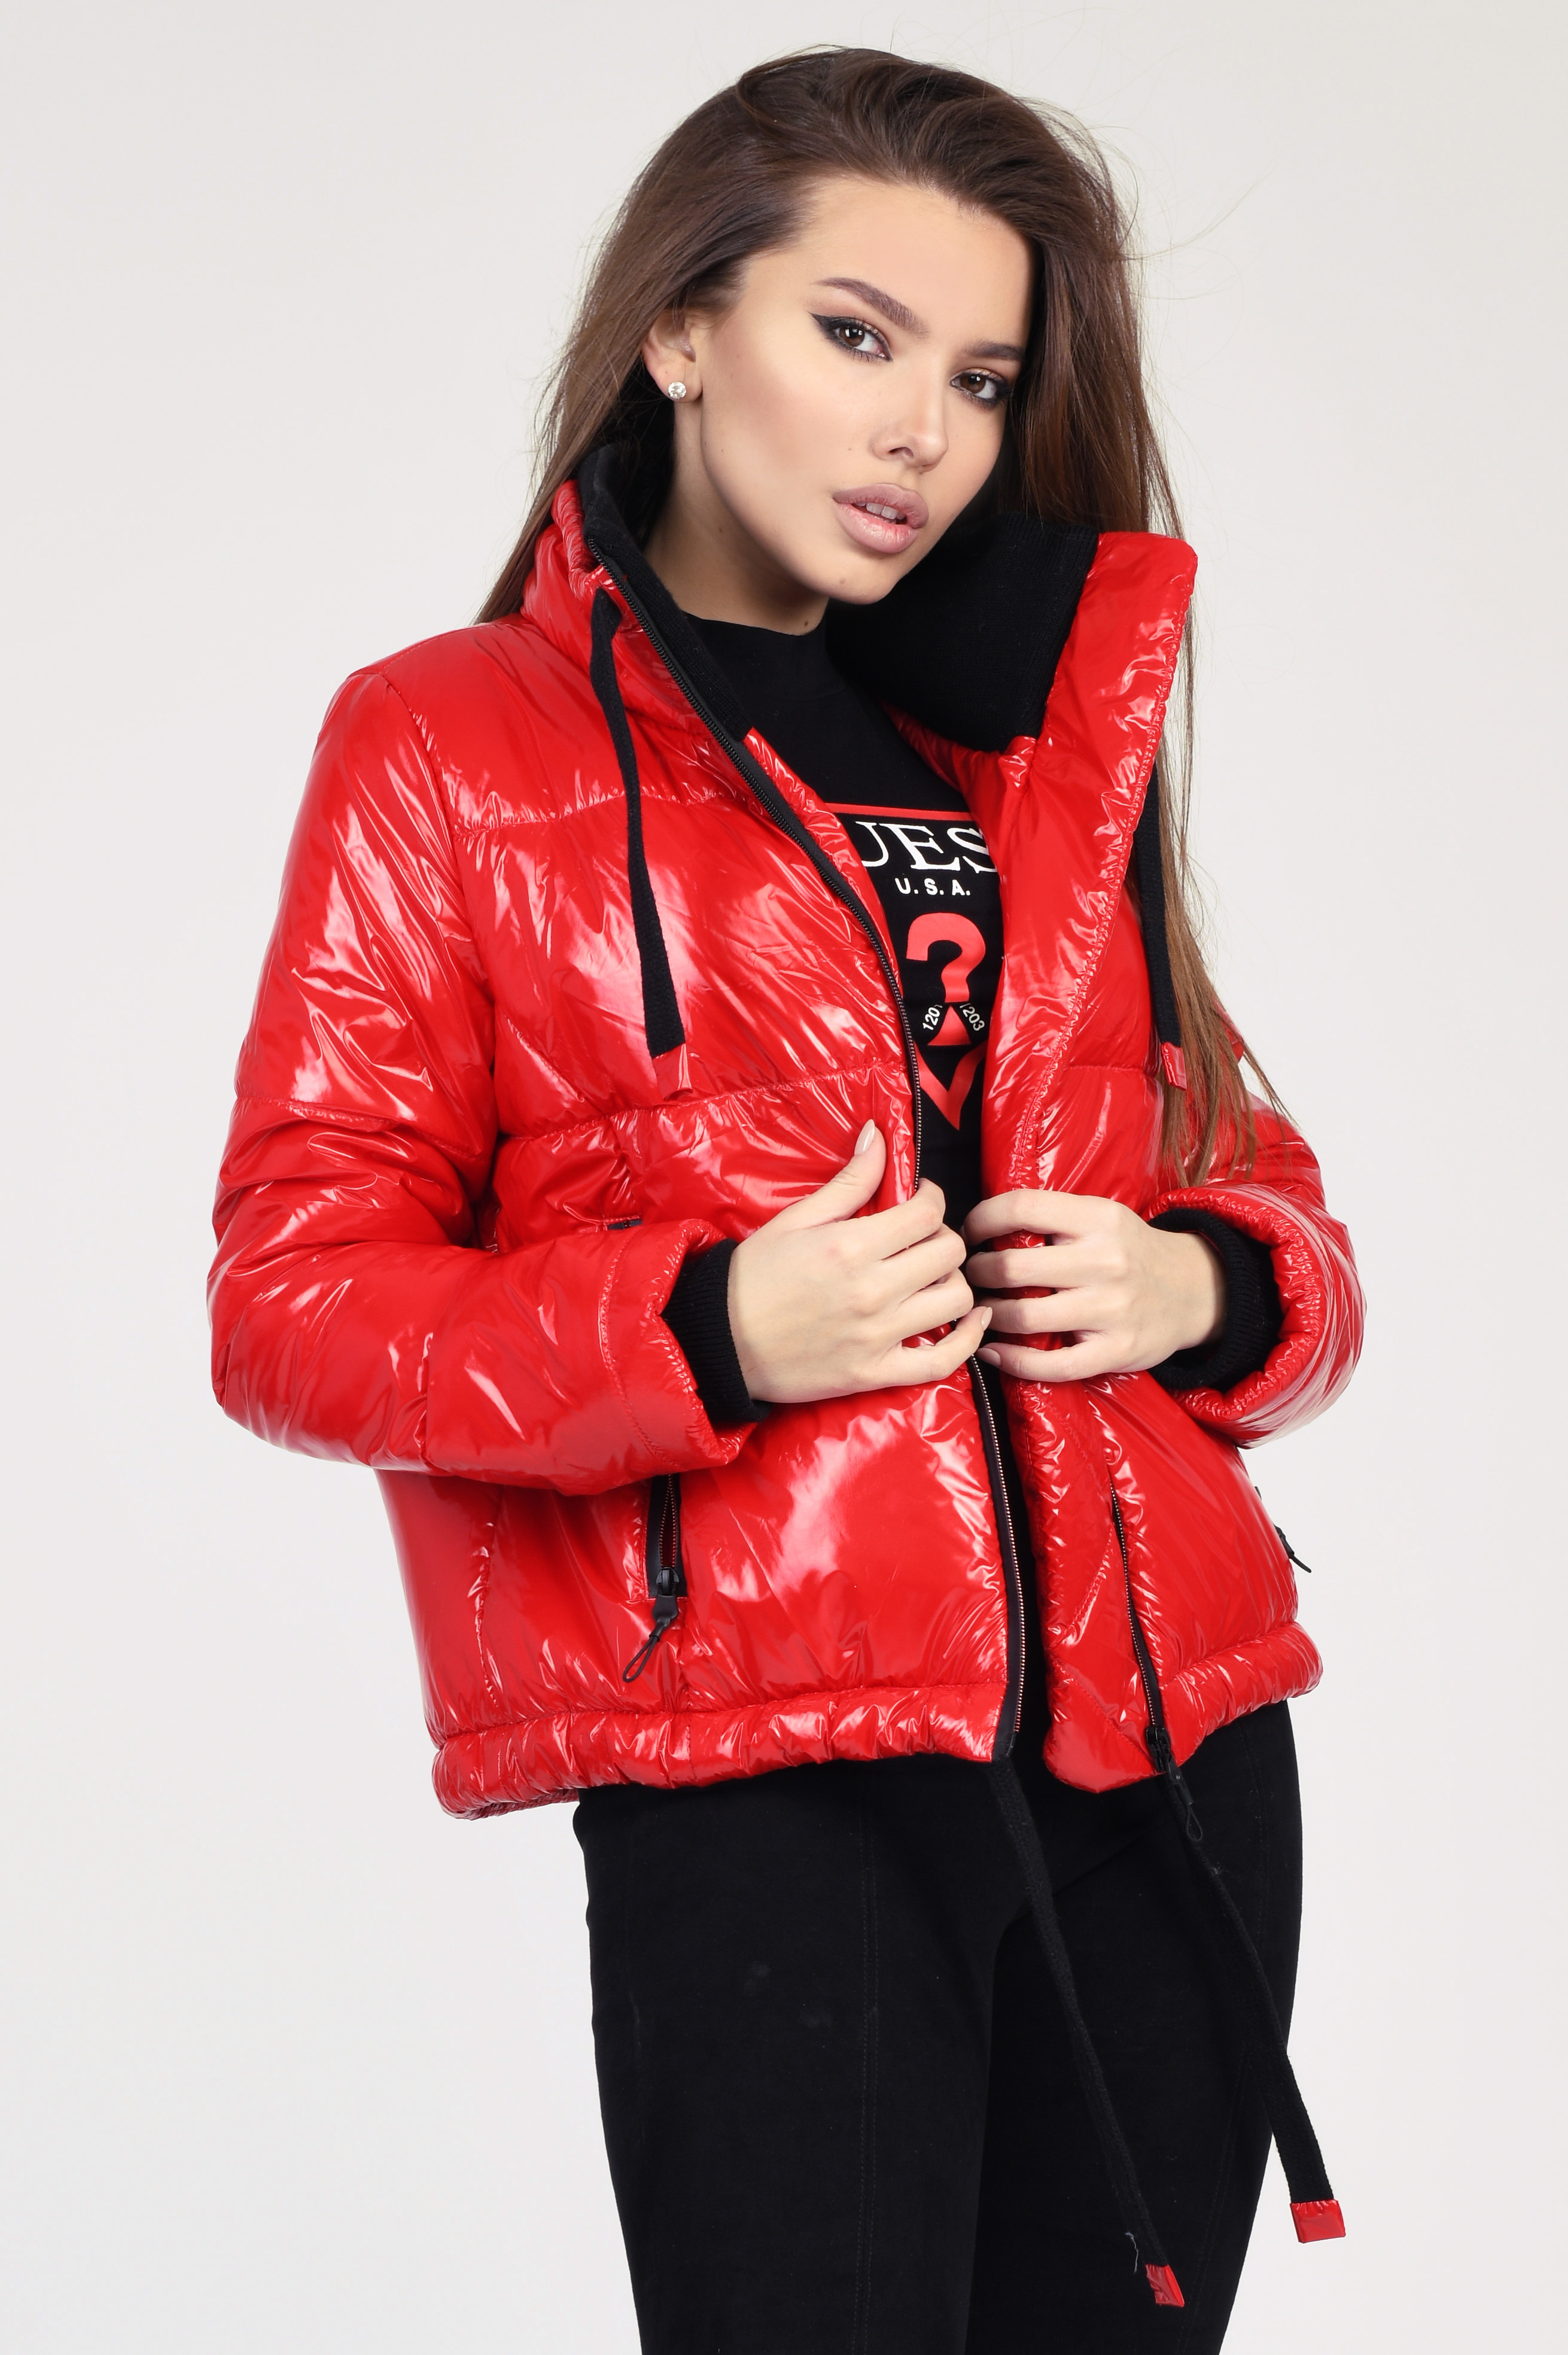 Куртка LS-8834-14, (Красный)